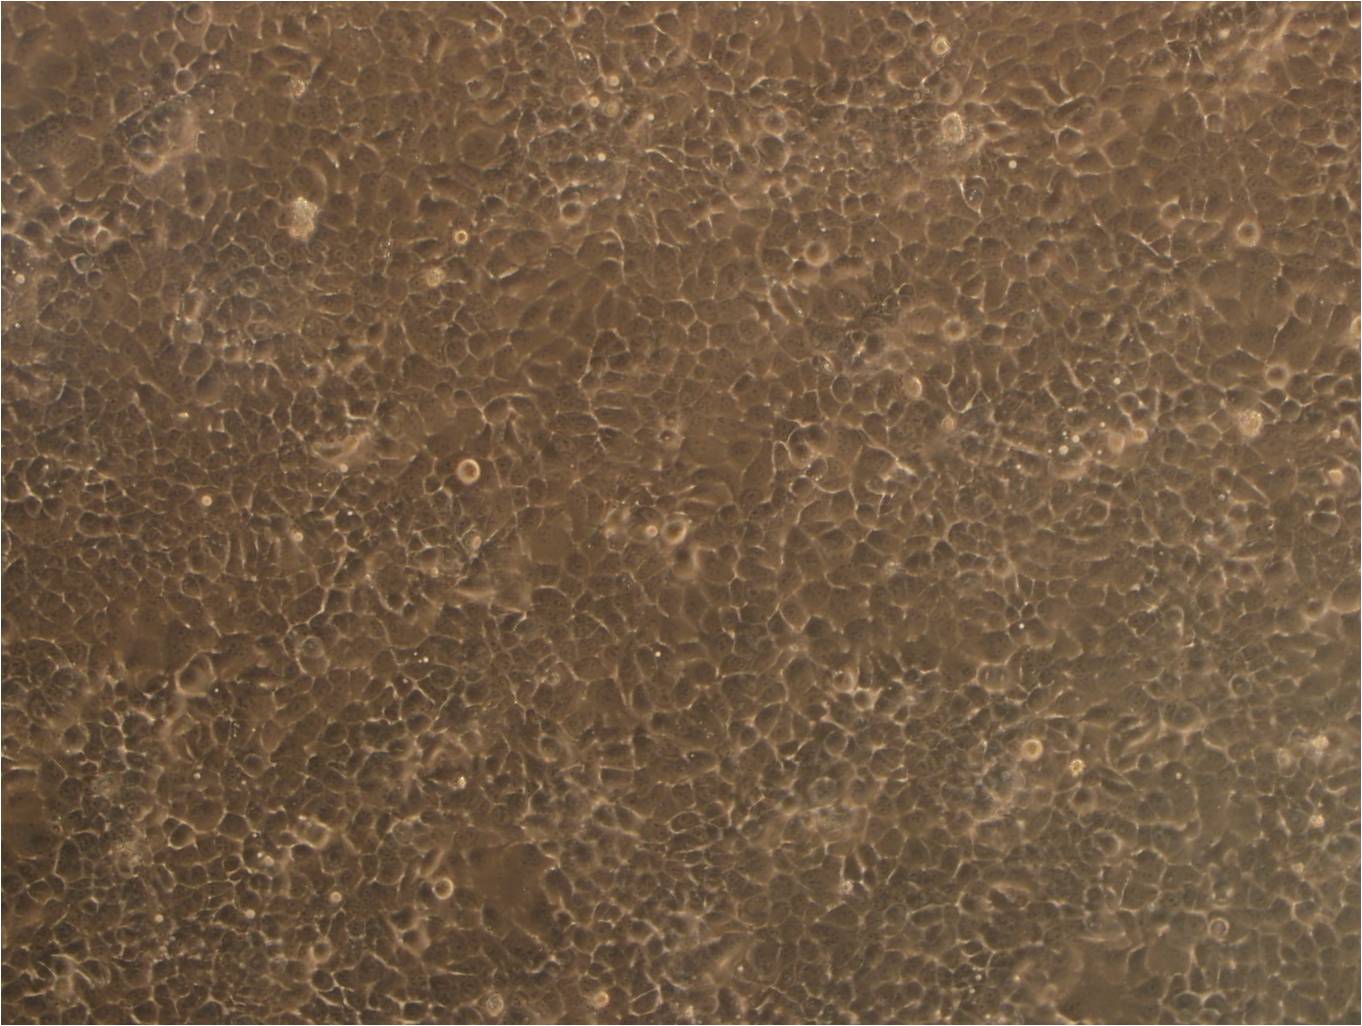 SW982 Cell|人滑膜肉瘤细胞